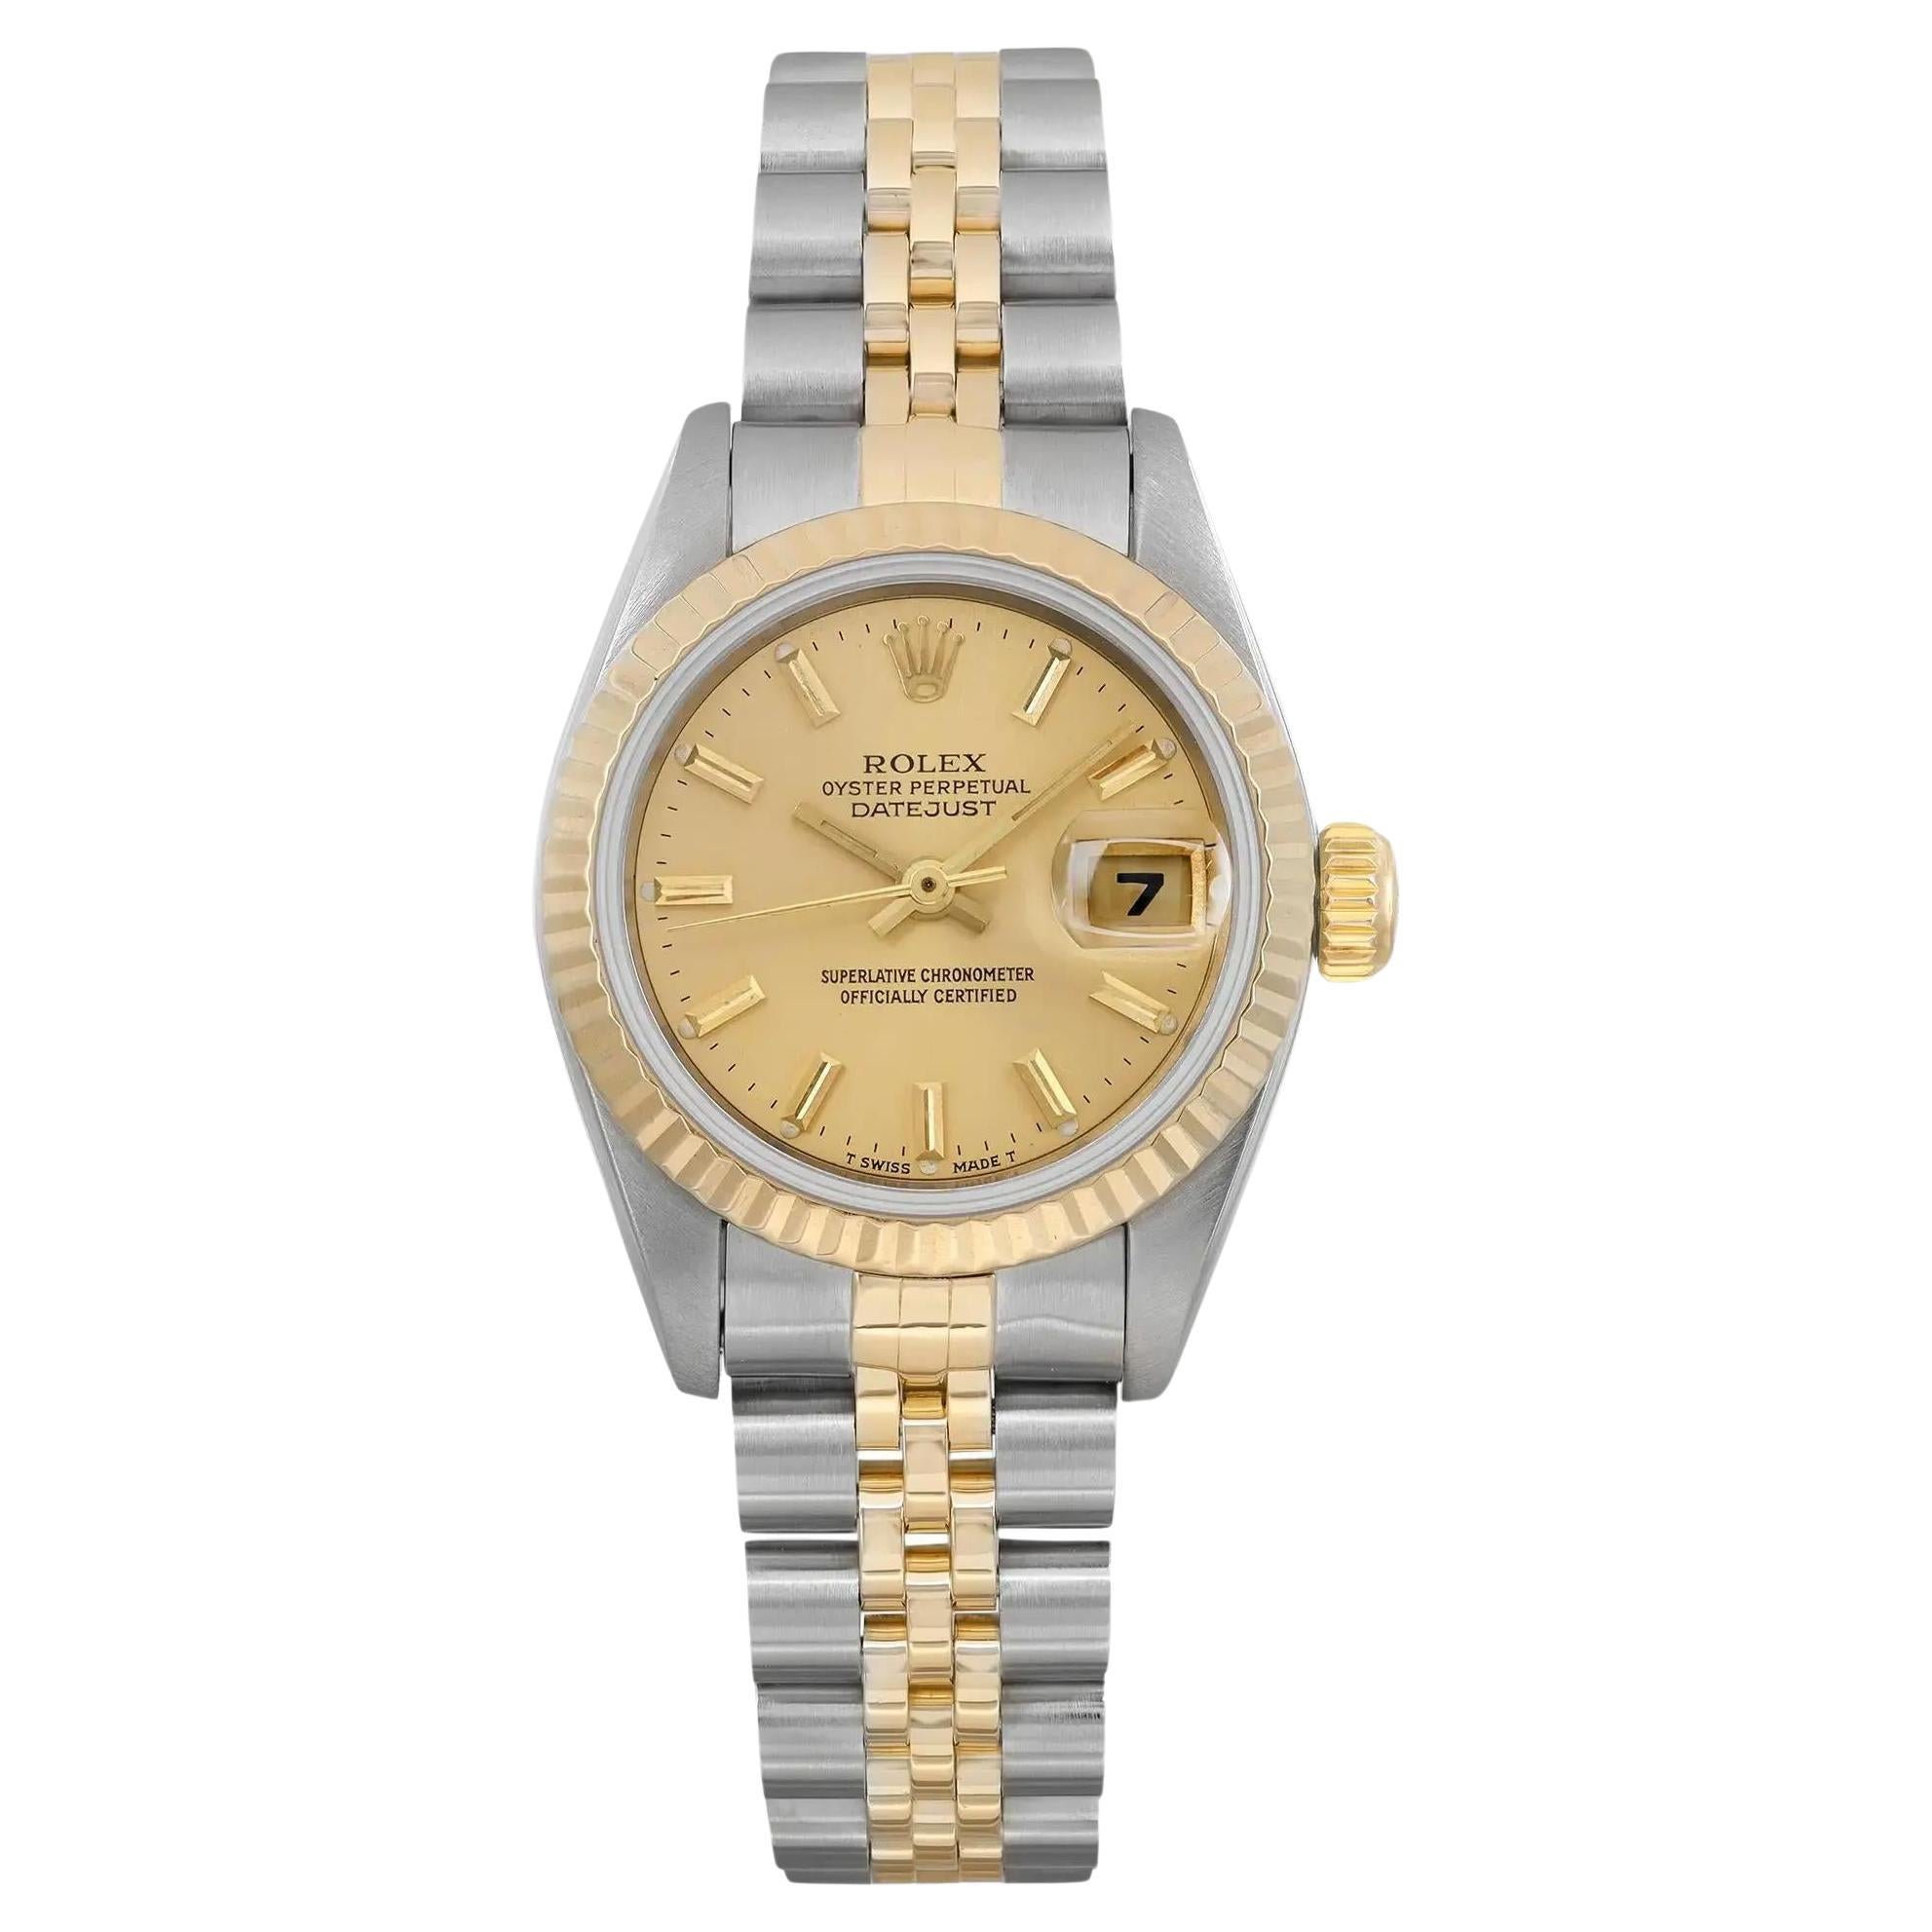 Rolex Datejust 26mm 18K Gelbgold Stahl-Uhr ohne Löcher Champagner-Zifferblatt 69173